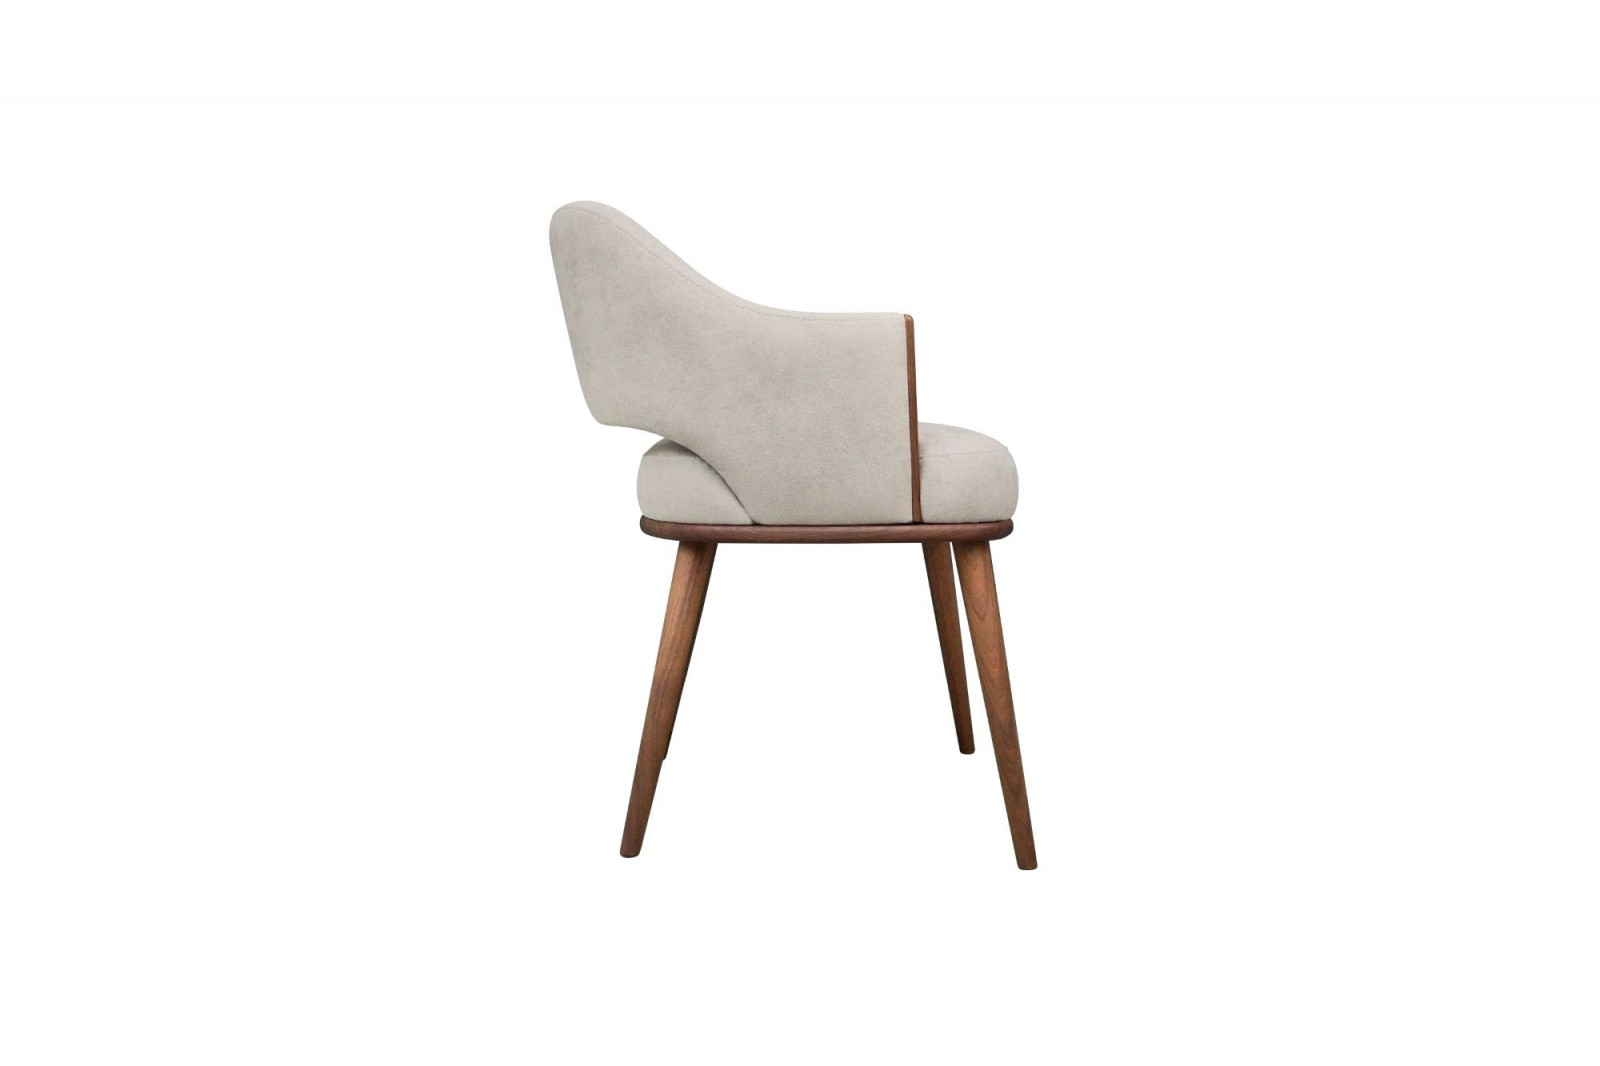 chair_interior_indoor_elegant_modern_wood_juliet_gansk_4-1198-1600-1400-100